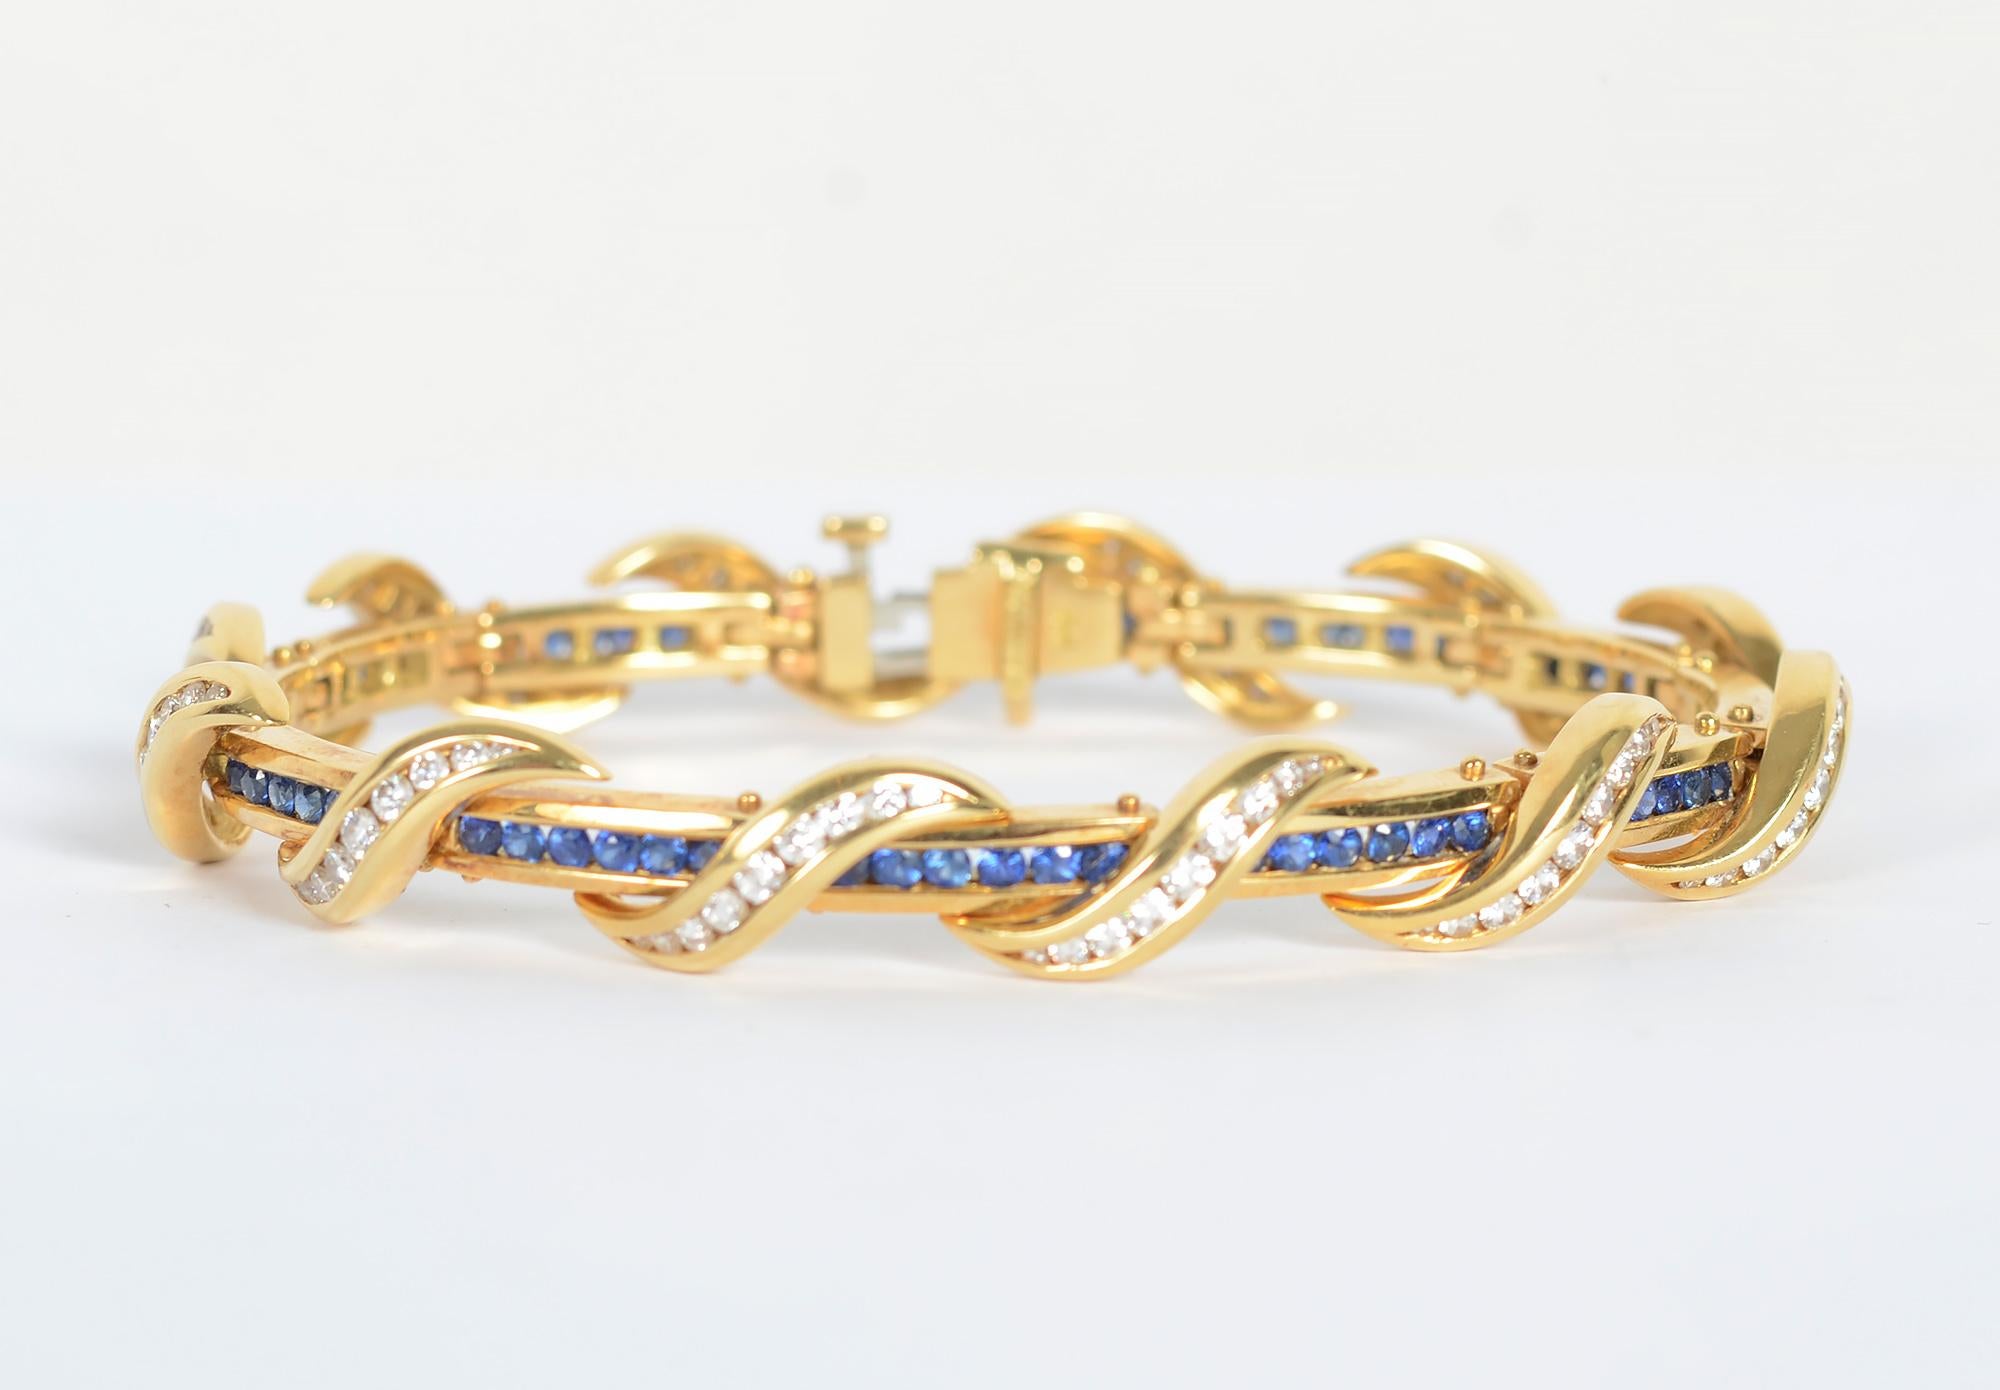 Élégant bracelet en saphir et diamants du designer américain Charles Krypell. Les saphirs sertis dans des canaux entourent le poignet avec élégance  diamants courbes se chevauchant. Le bracelet a 108  diamants d'un poids total d'environ 2,5 carats.